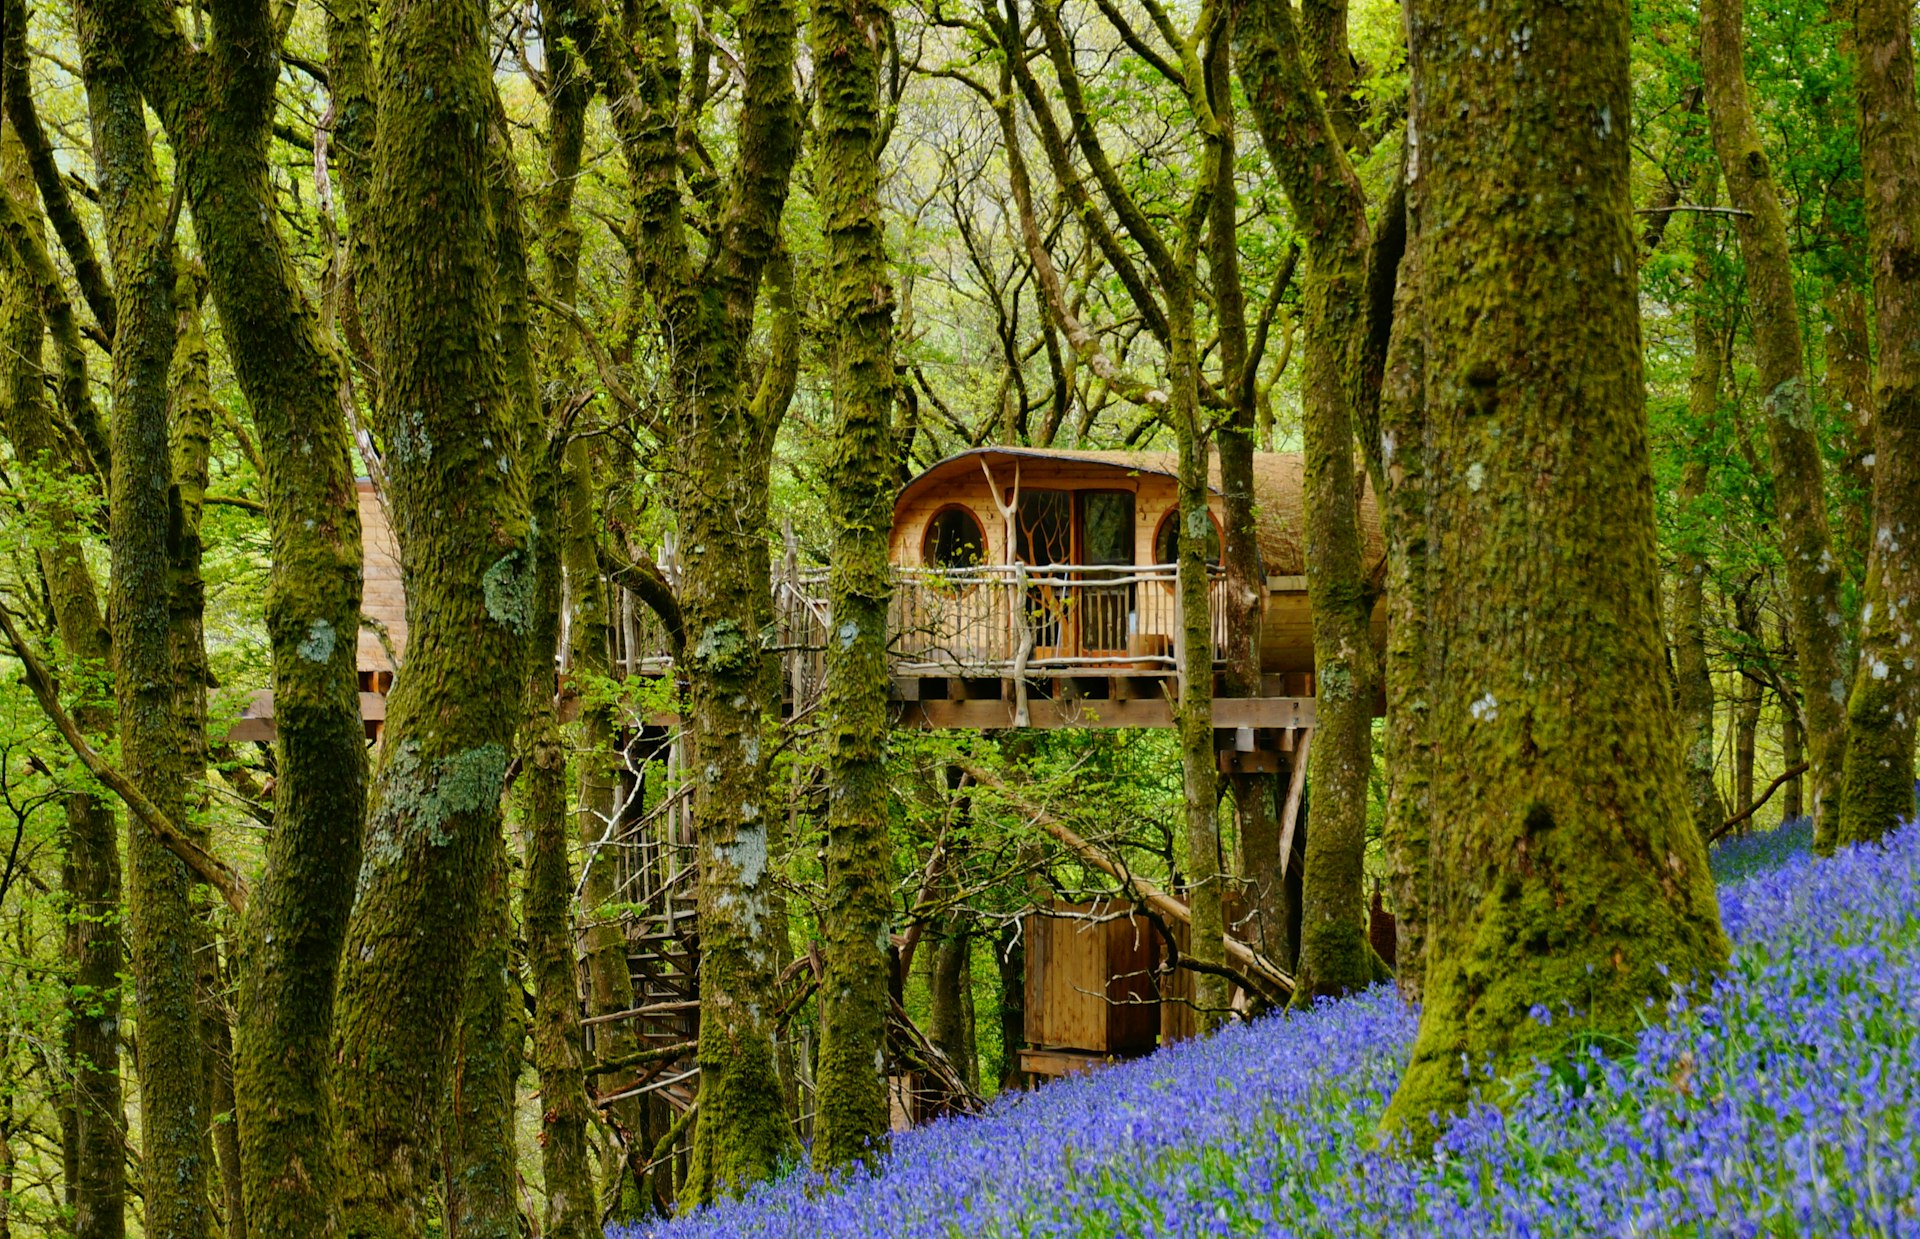 Uma casa na árvore de madeira em uma floresta atapetada com campânulas